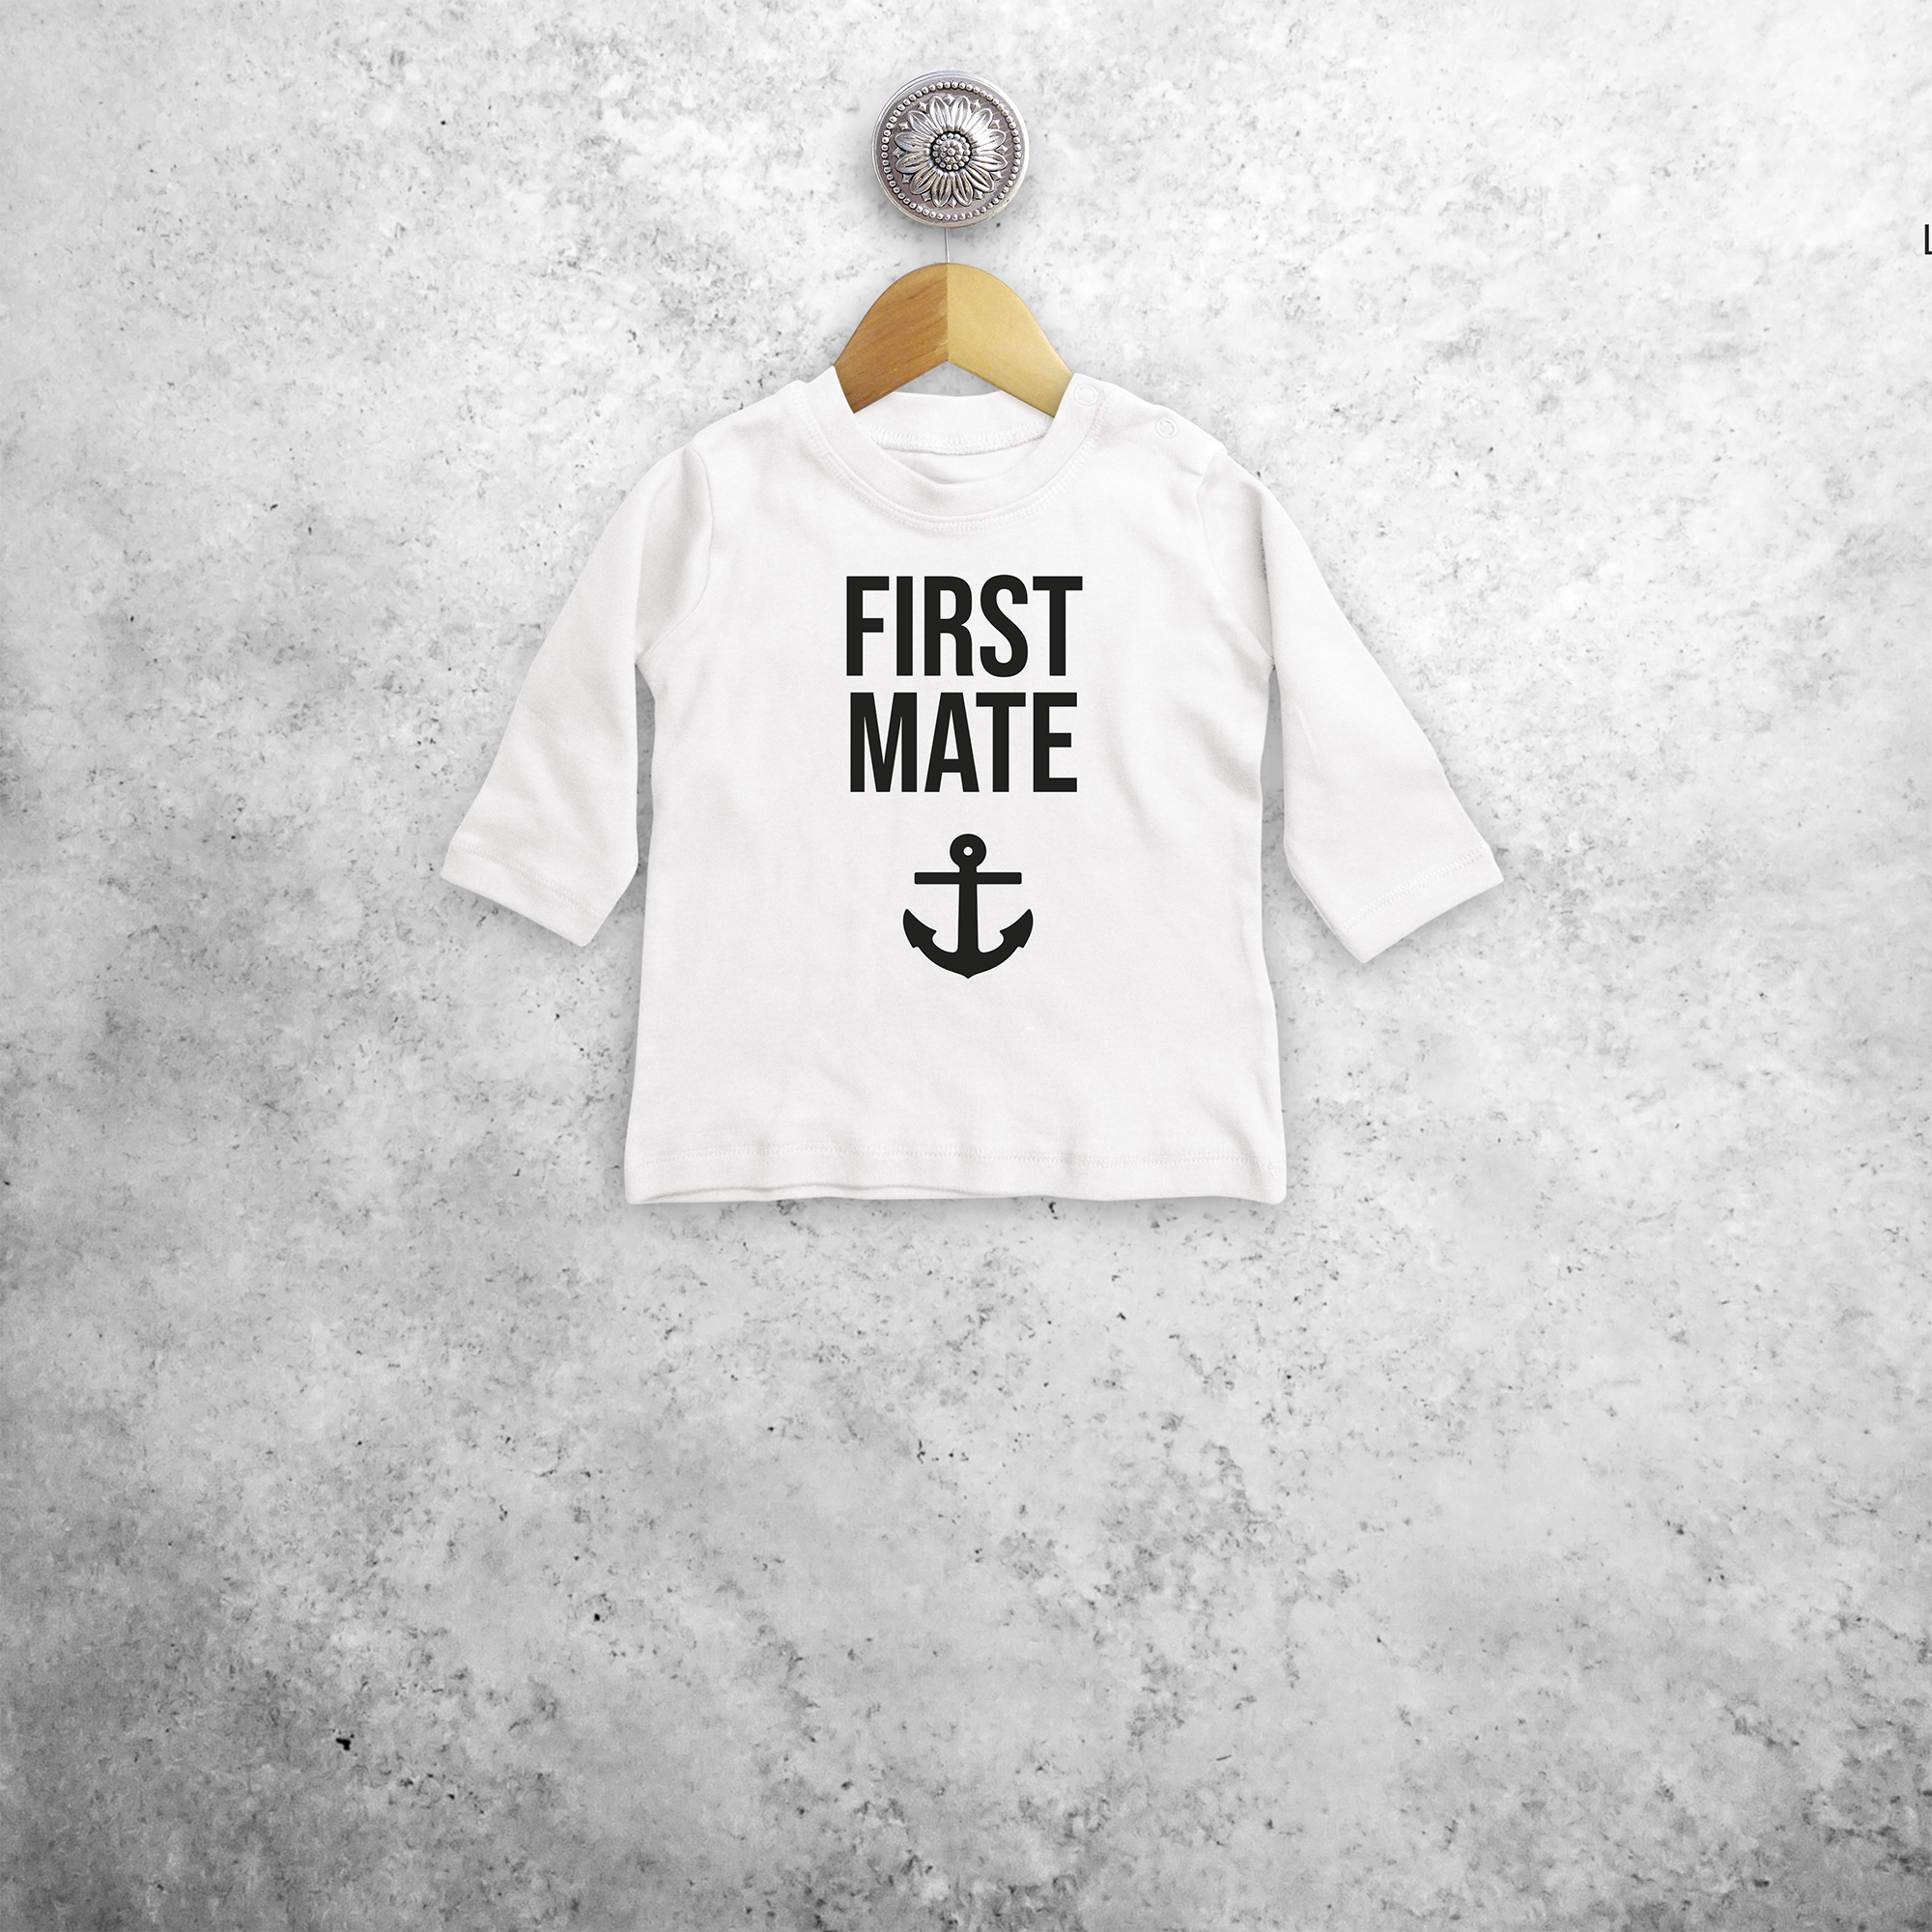 'First mate' baby longsleeve shirt